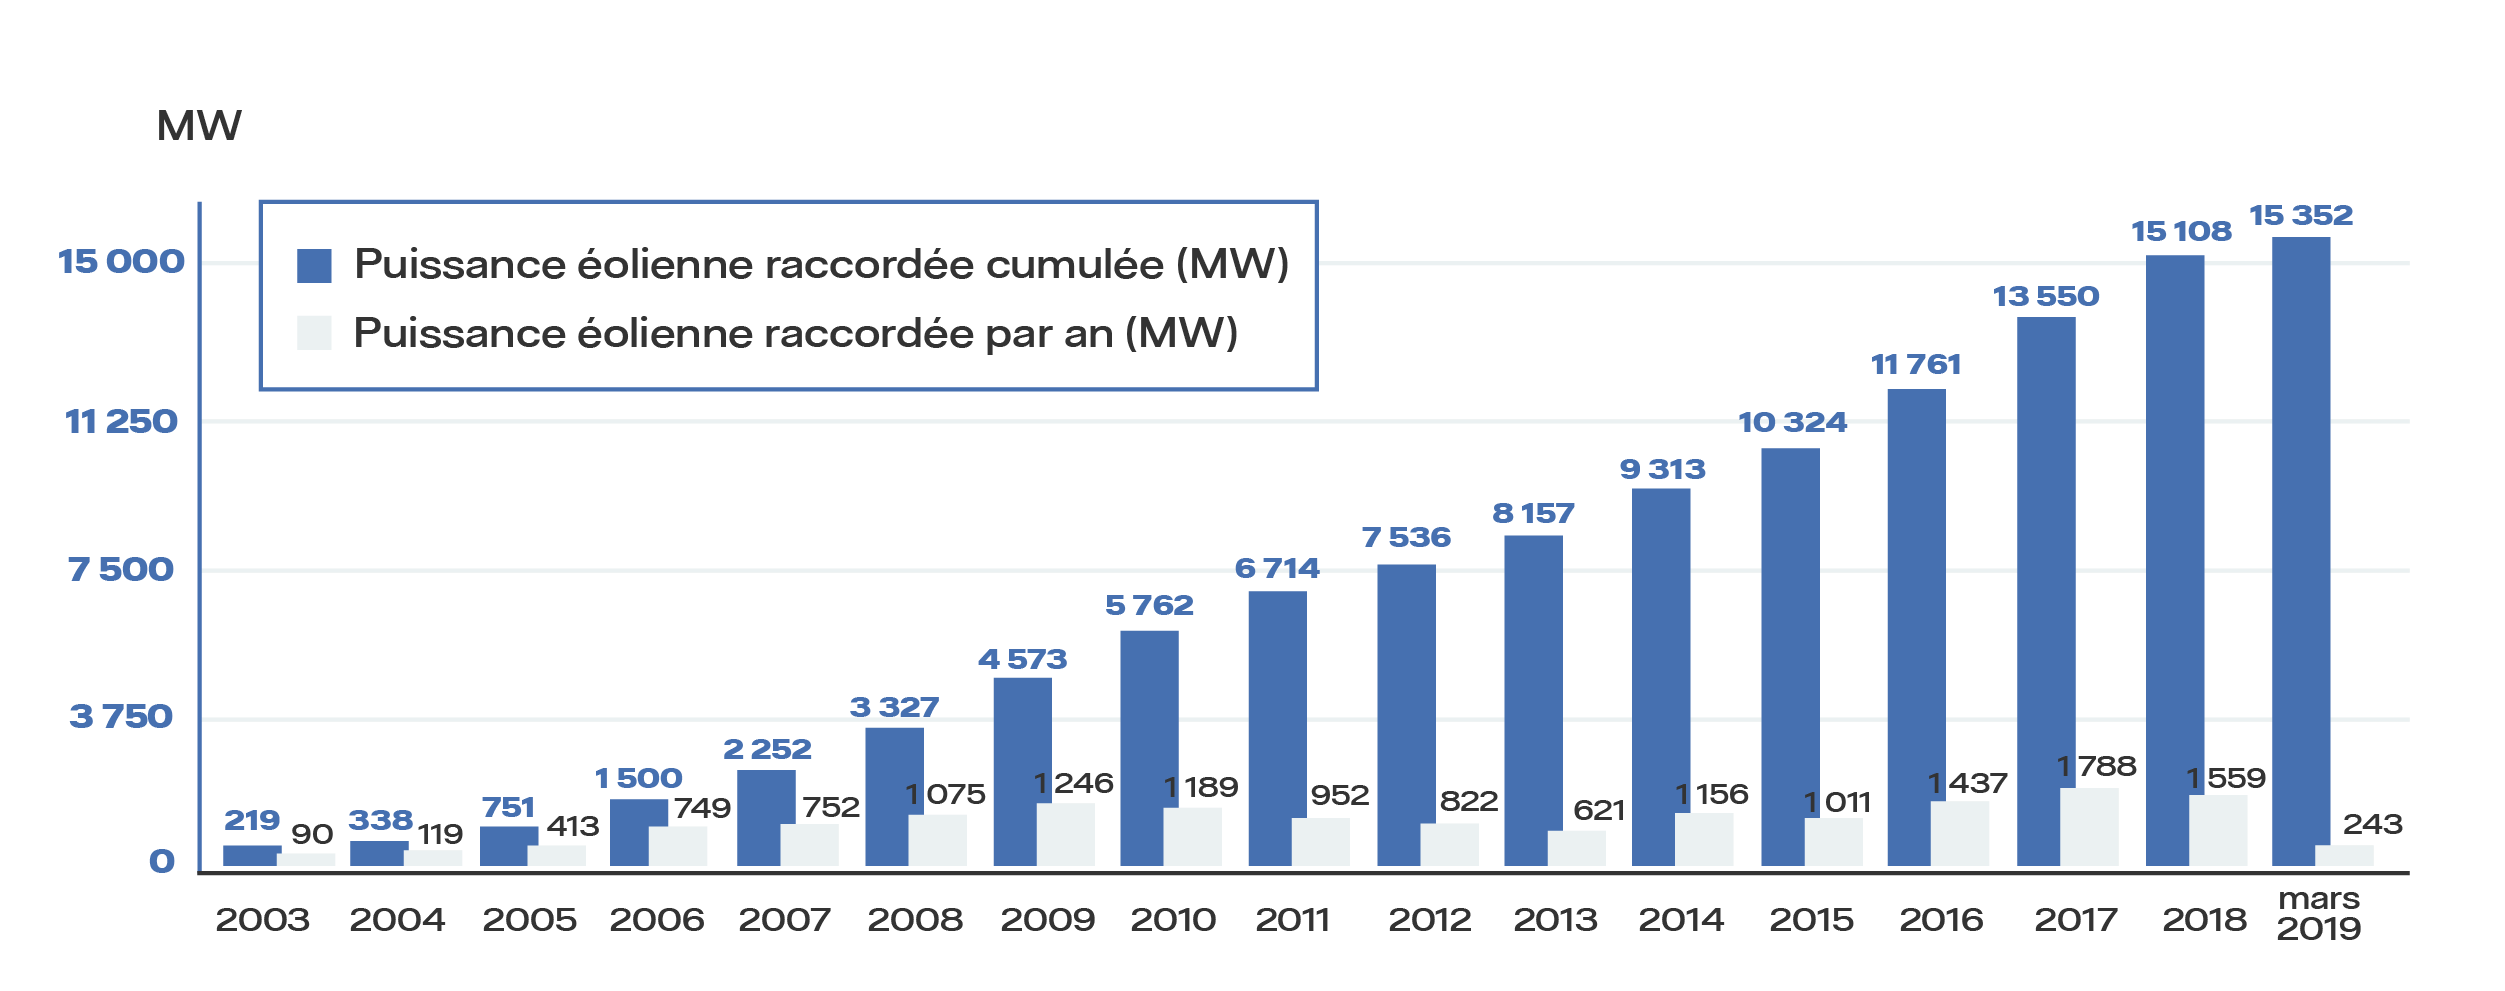 L’évolution du parc éolien français (Graphique, source Panorama de l’électricité renouvelable)